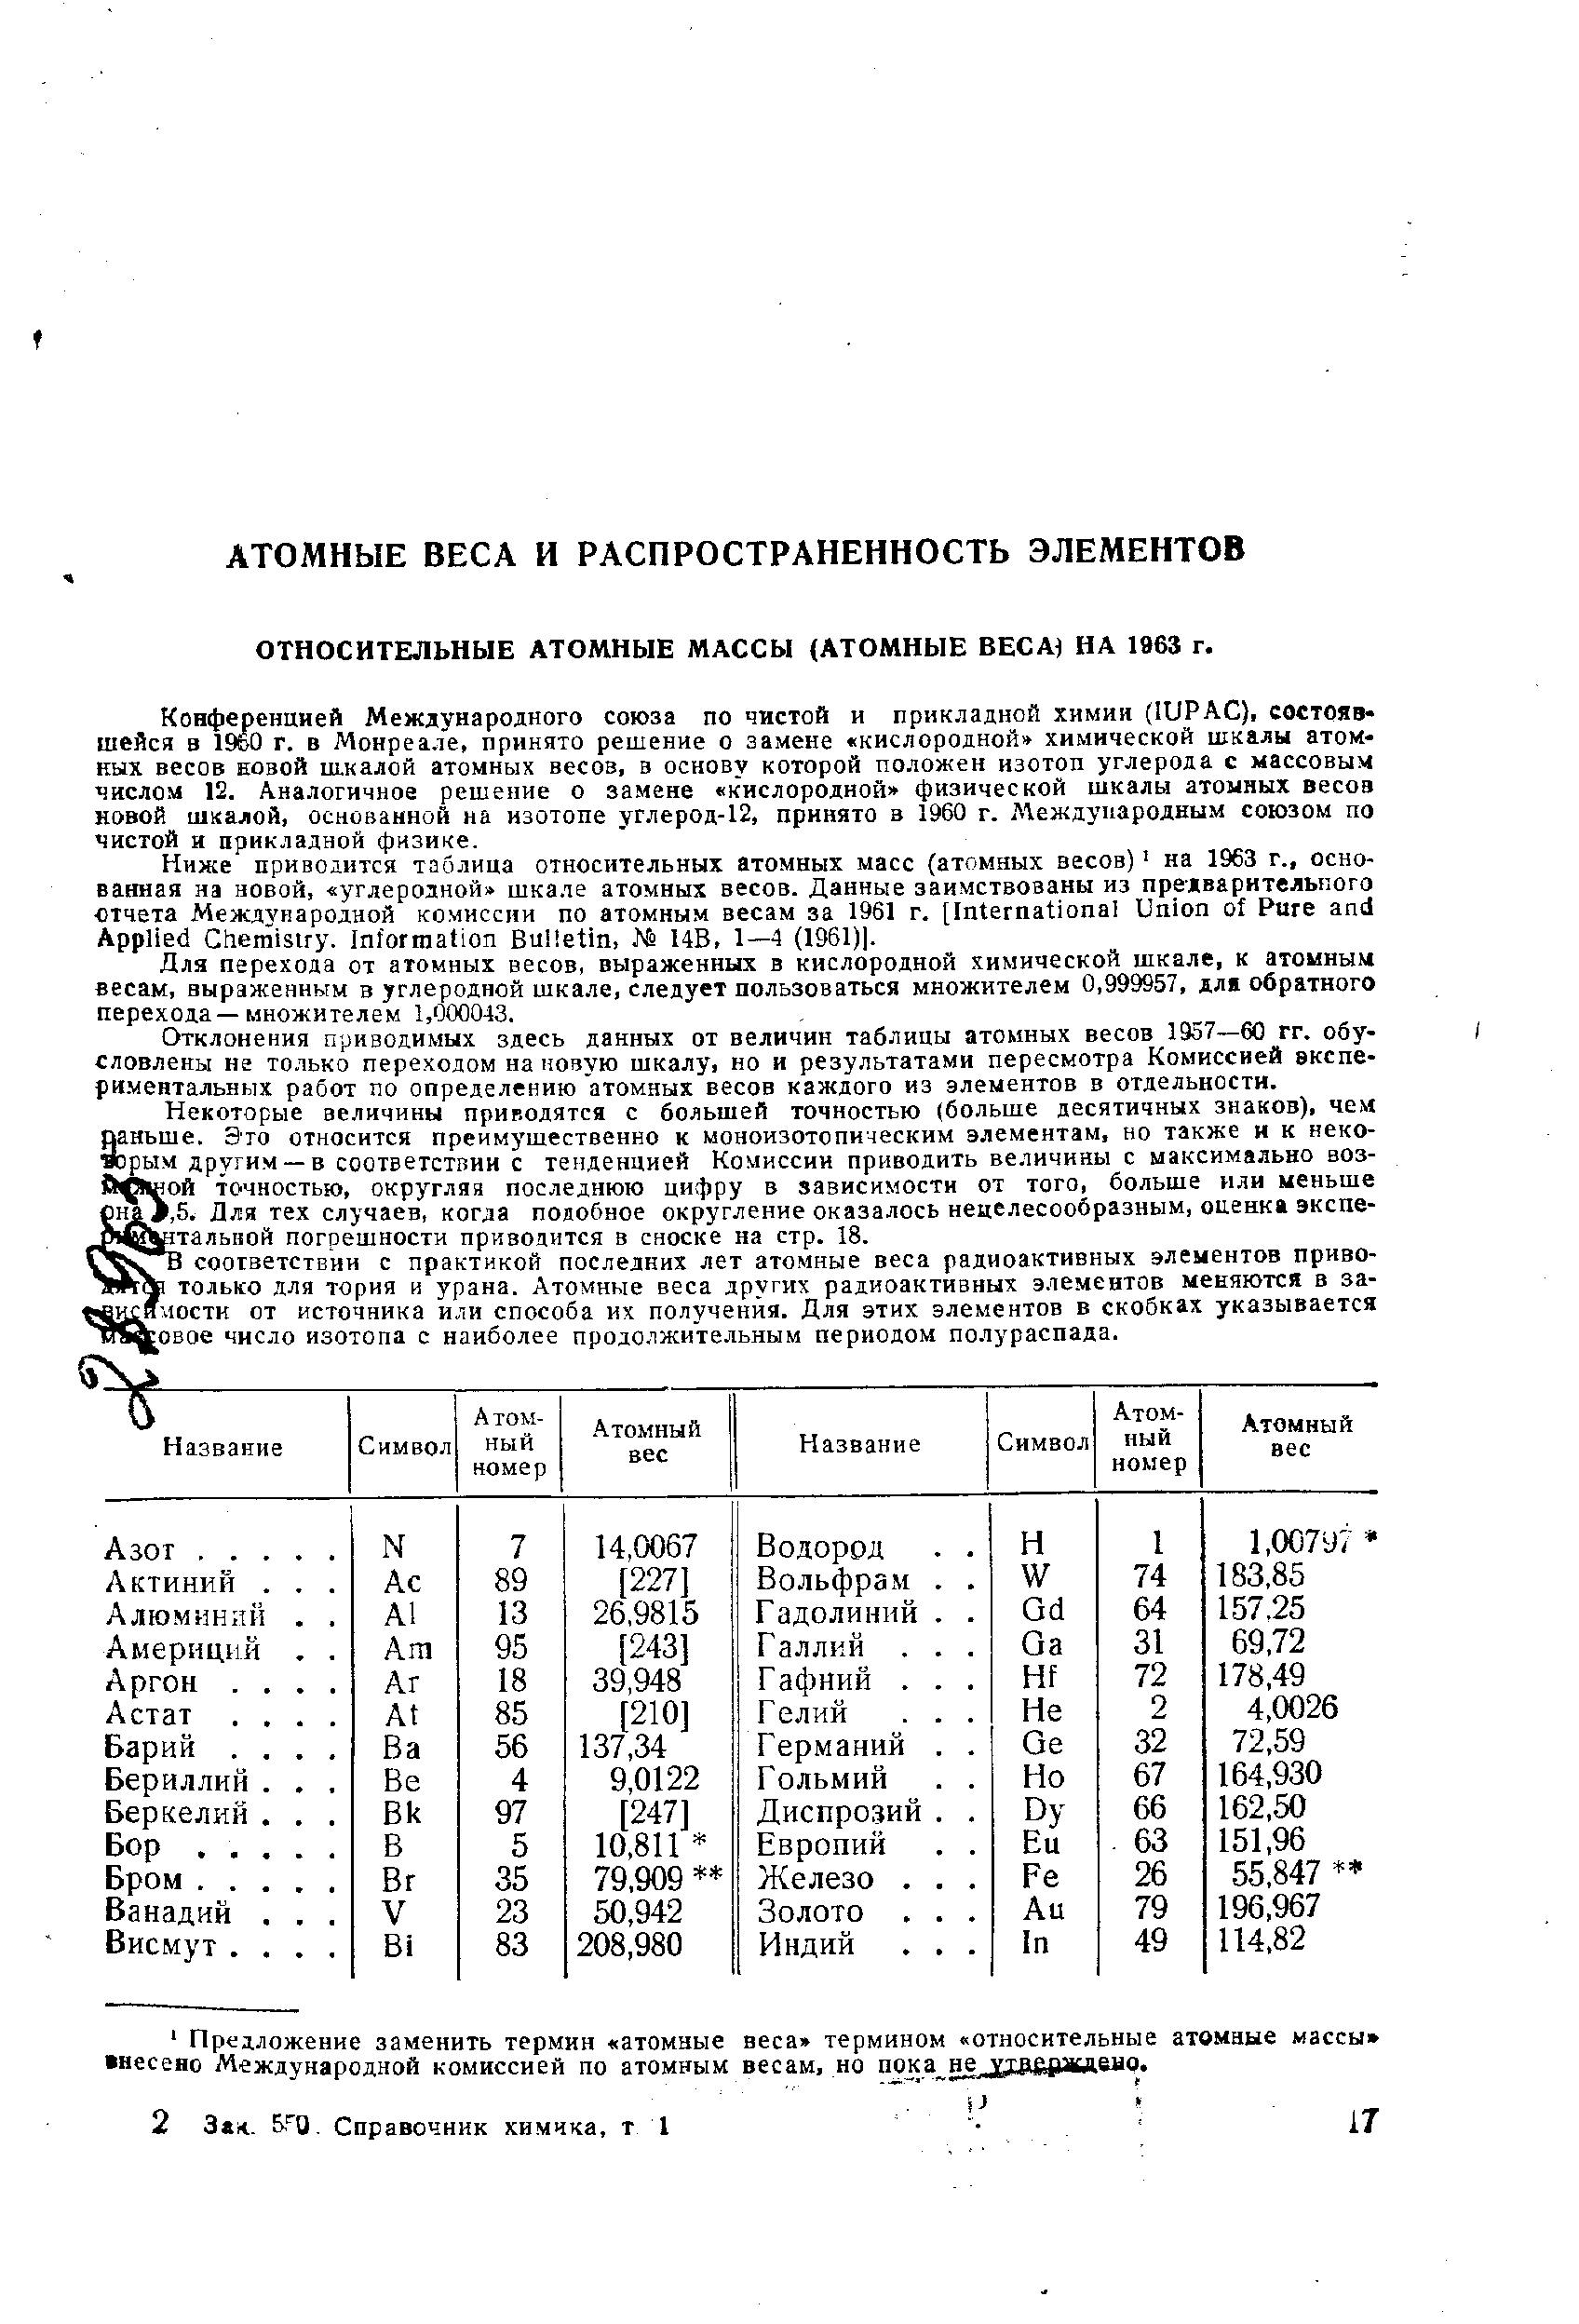 ОТНОСИТЕЛЬНЫЕ АТОМНЫЕ МАССЫ (АТОМНЫЕ ВЕСА НА 1963 г.